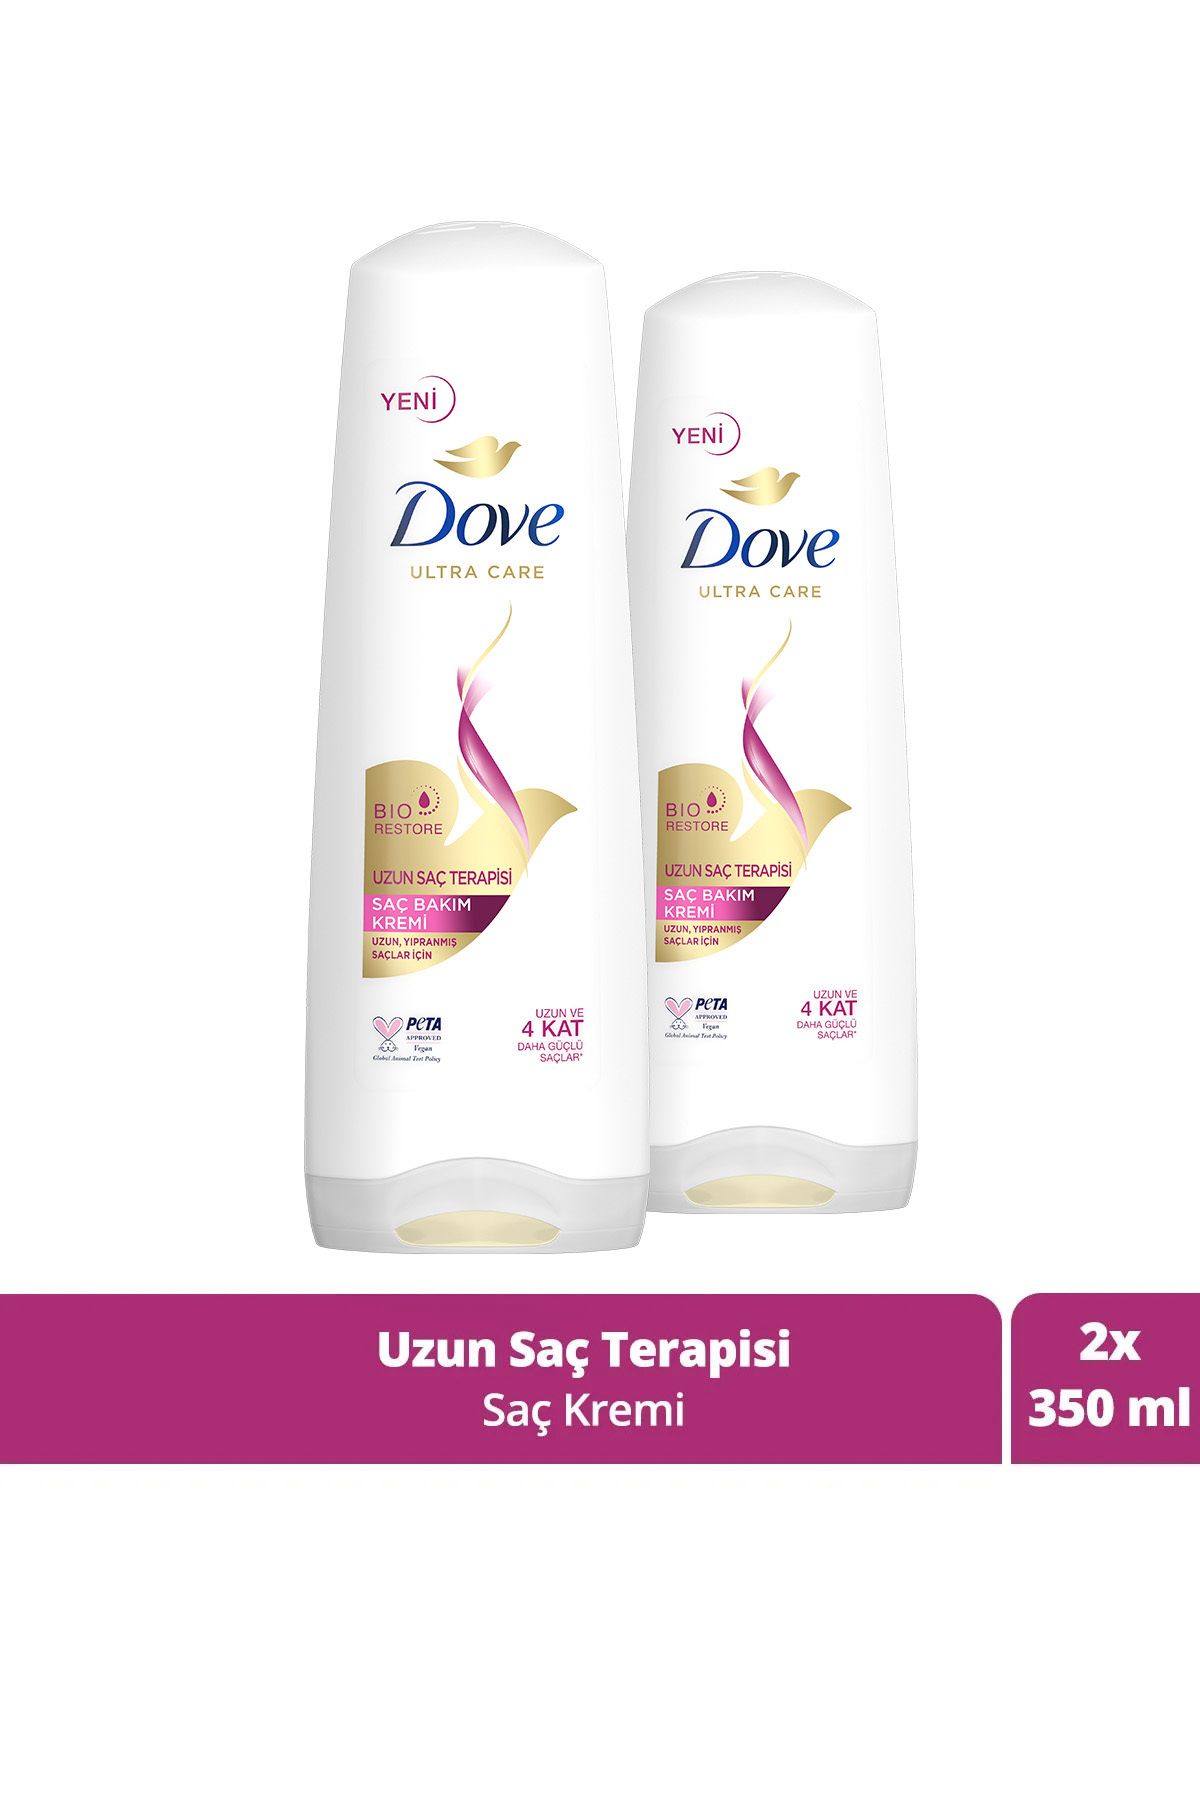 Dove Ultra Care Saç Bakım Kremi Uzun Saç Terapisi Uzun Yıpranmış Saçlar Için 350 ml X2 Adet